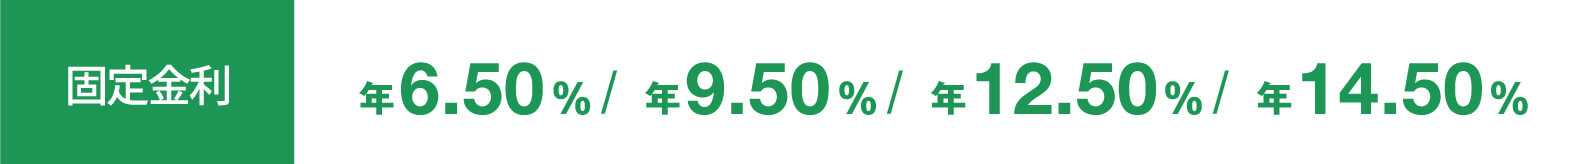 固定金利 6.50%/9.50%/12.50%/14.50%